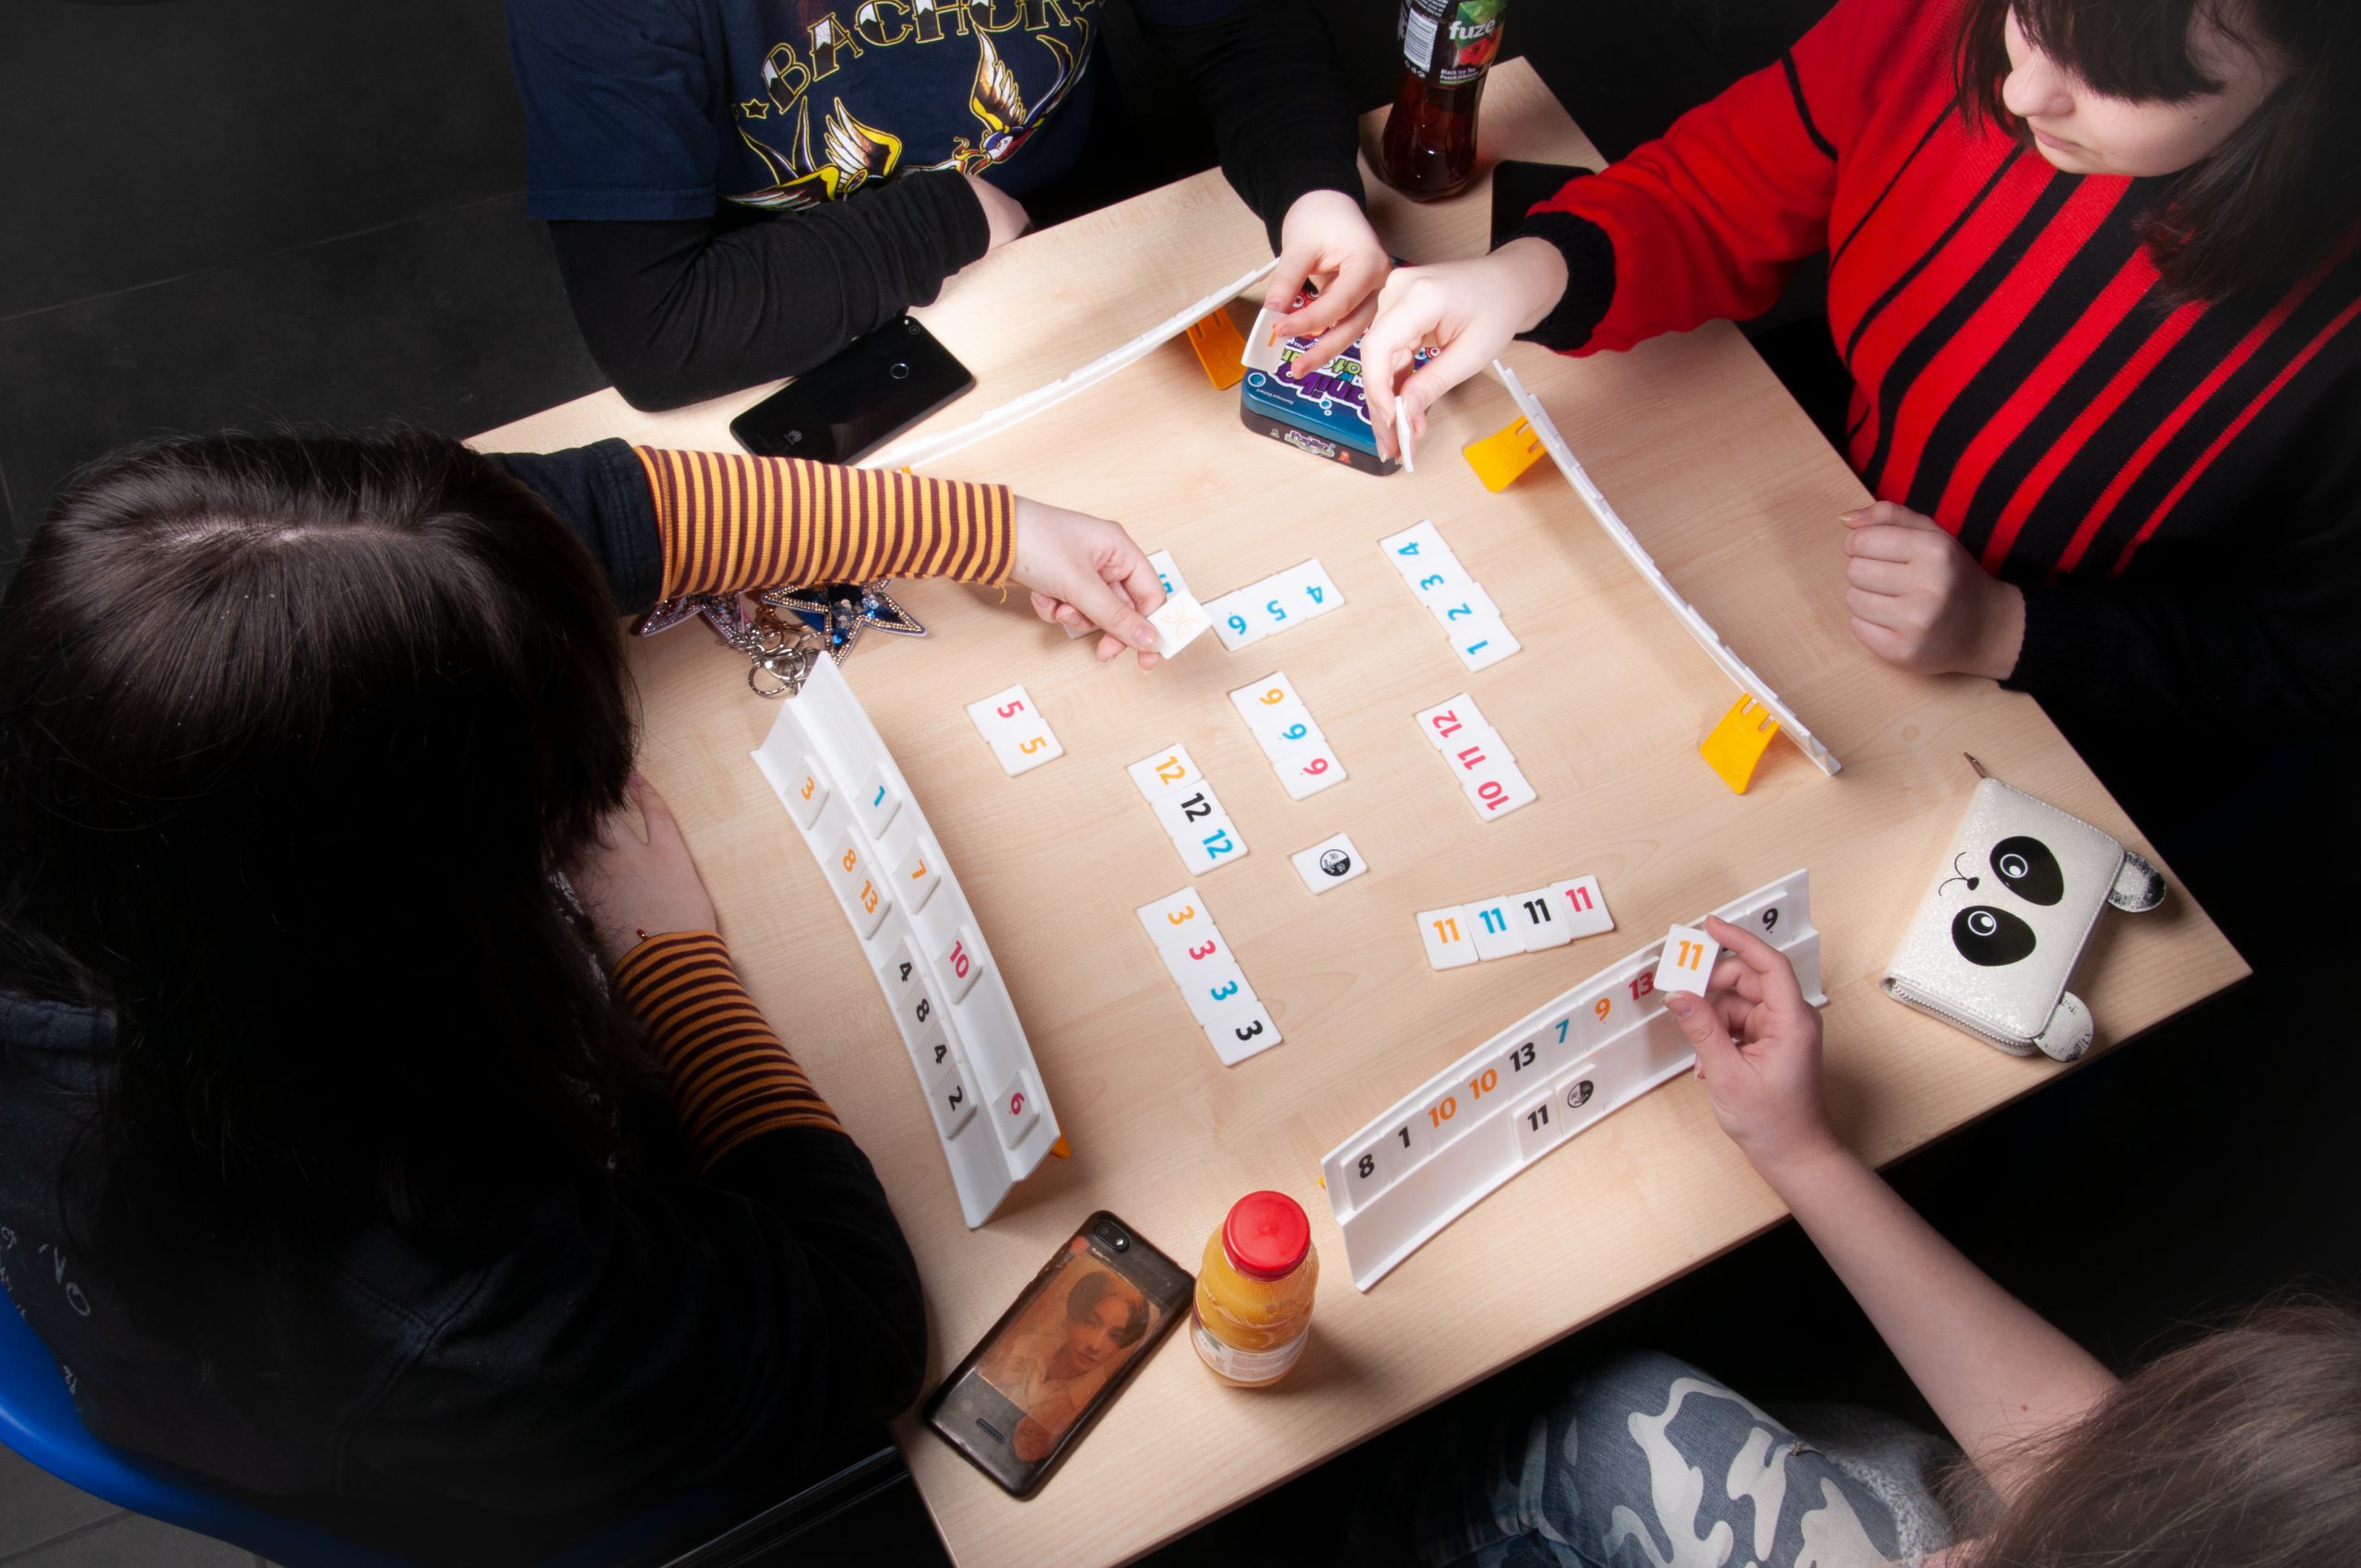 cztery młode osoby grają w grę planszową, na stoliku rozłożone elementy gry